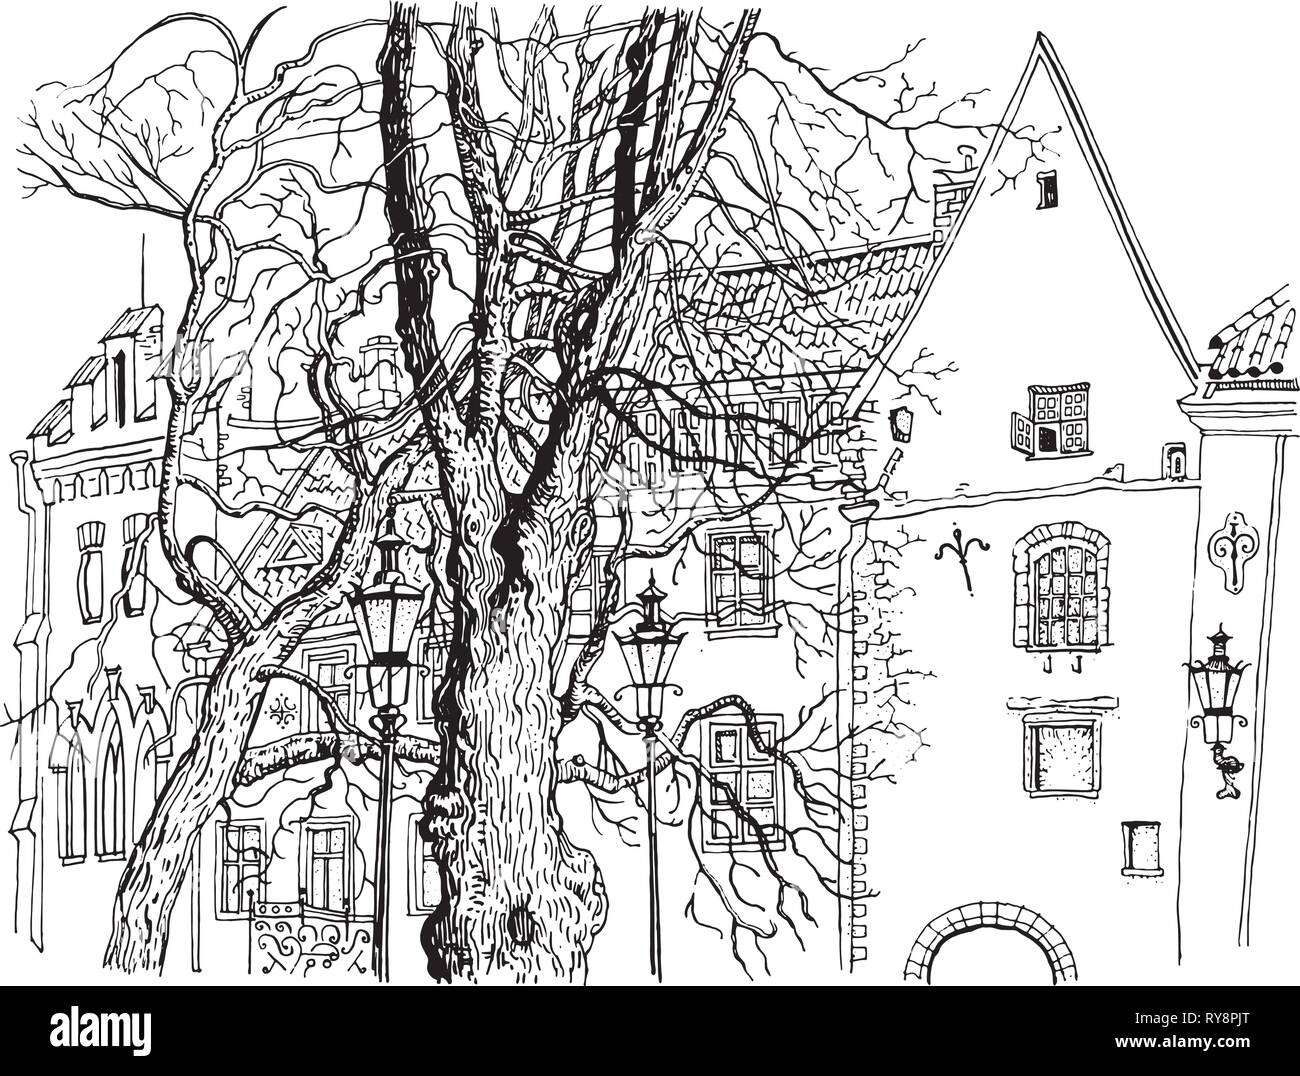 Vue sur la vieille ville de Tallinn. Olevimagi street. Graphiques dessinés à la main, un stylo à encre style illustration. L'architecture historique, des maisons médiévales, des arbres. États baltes Illustration de Vecteur